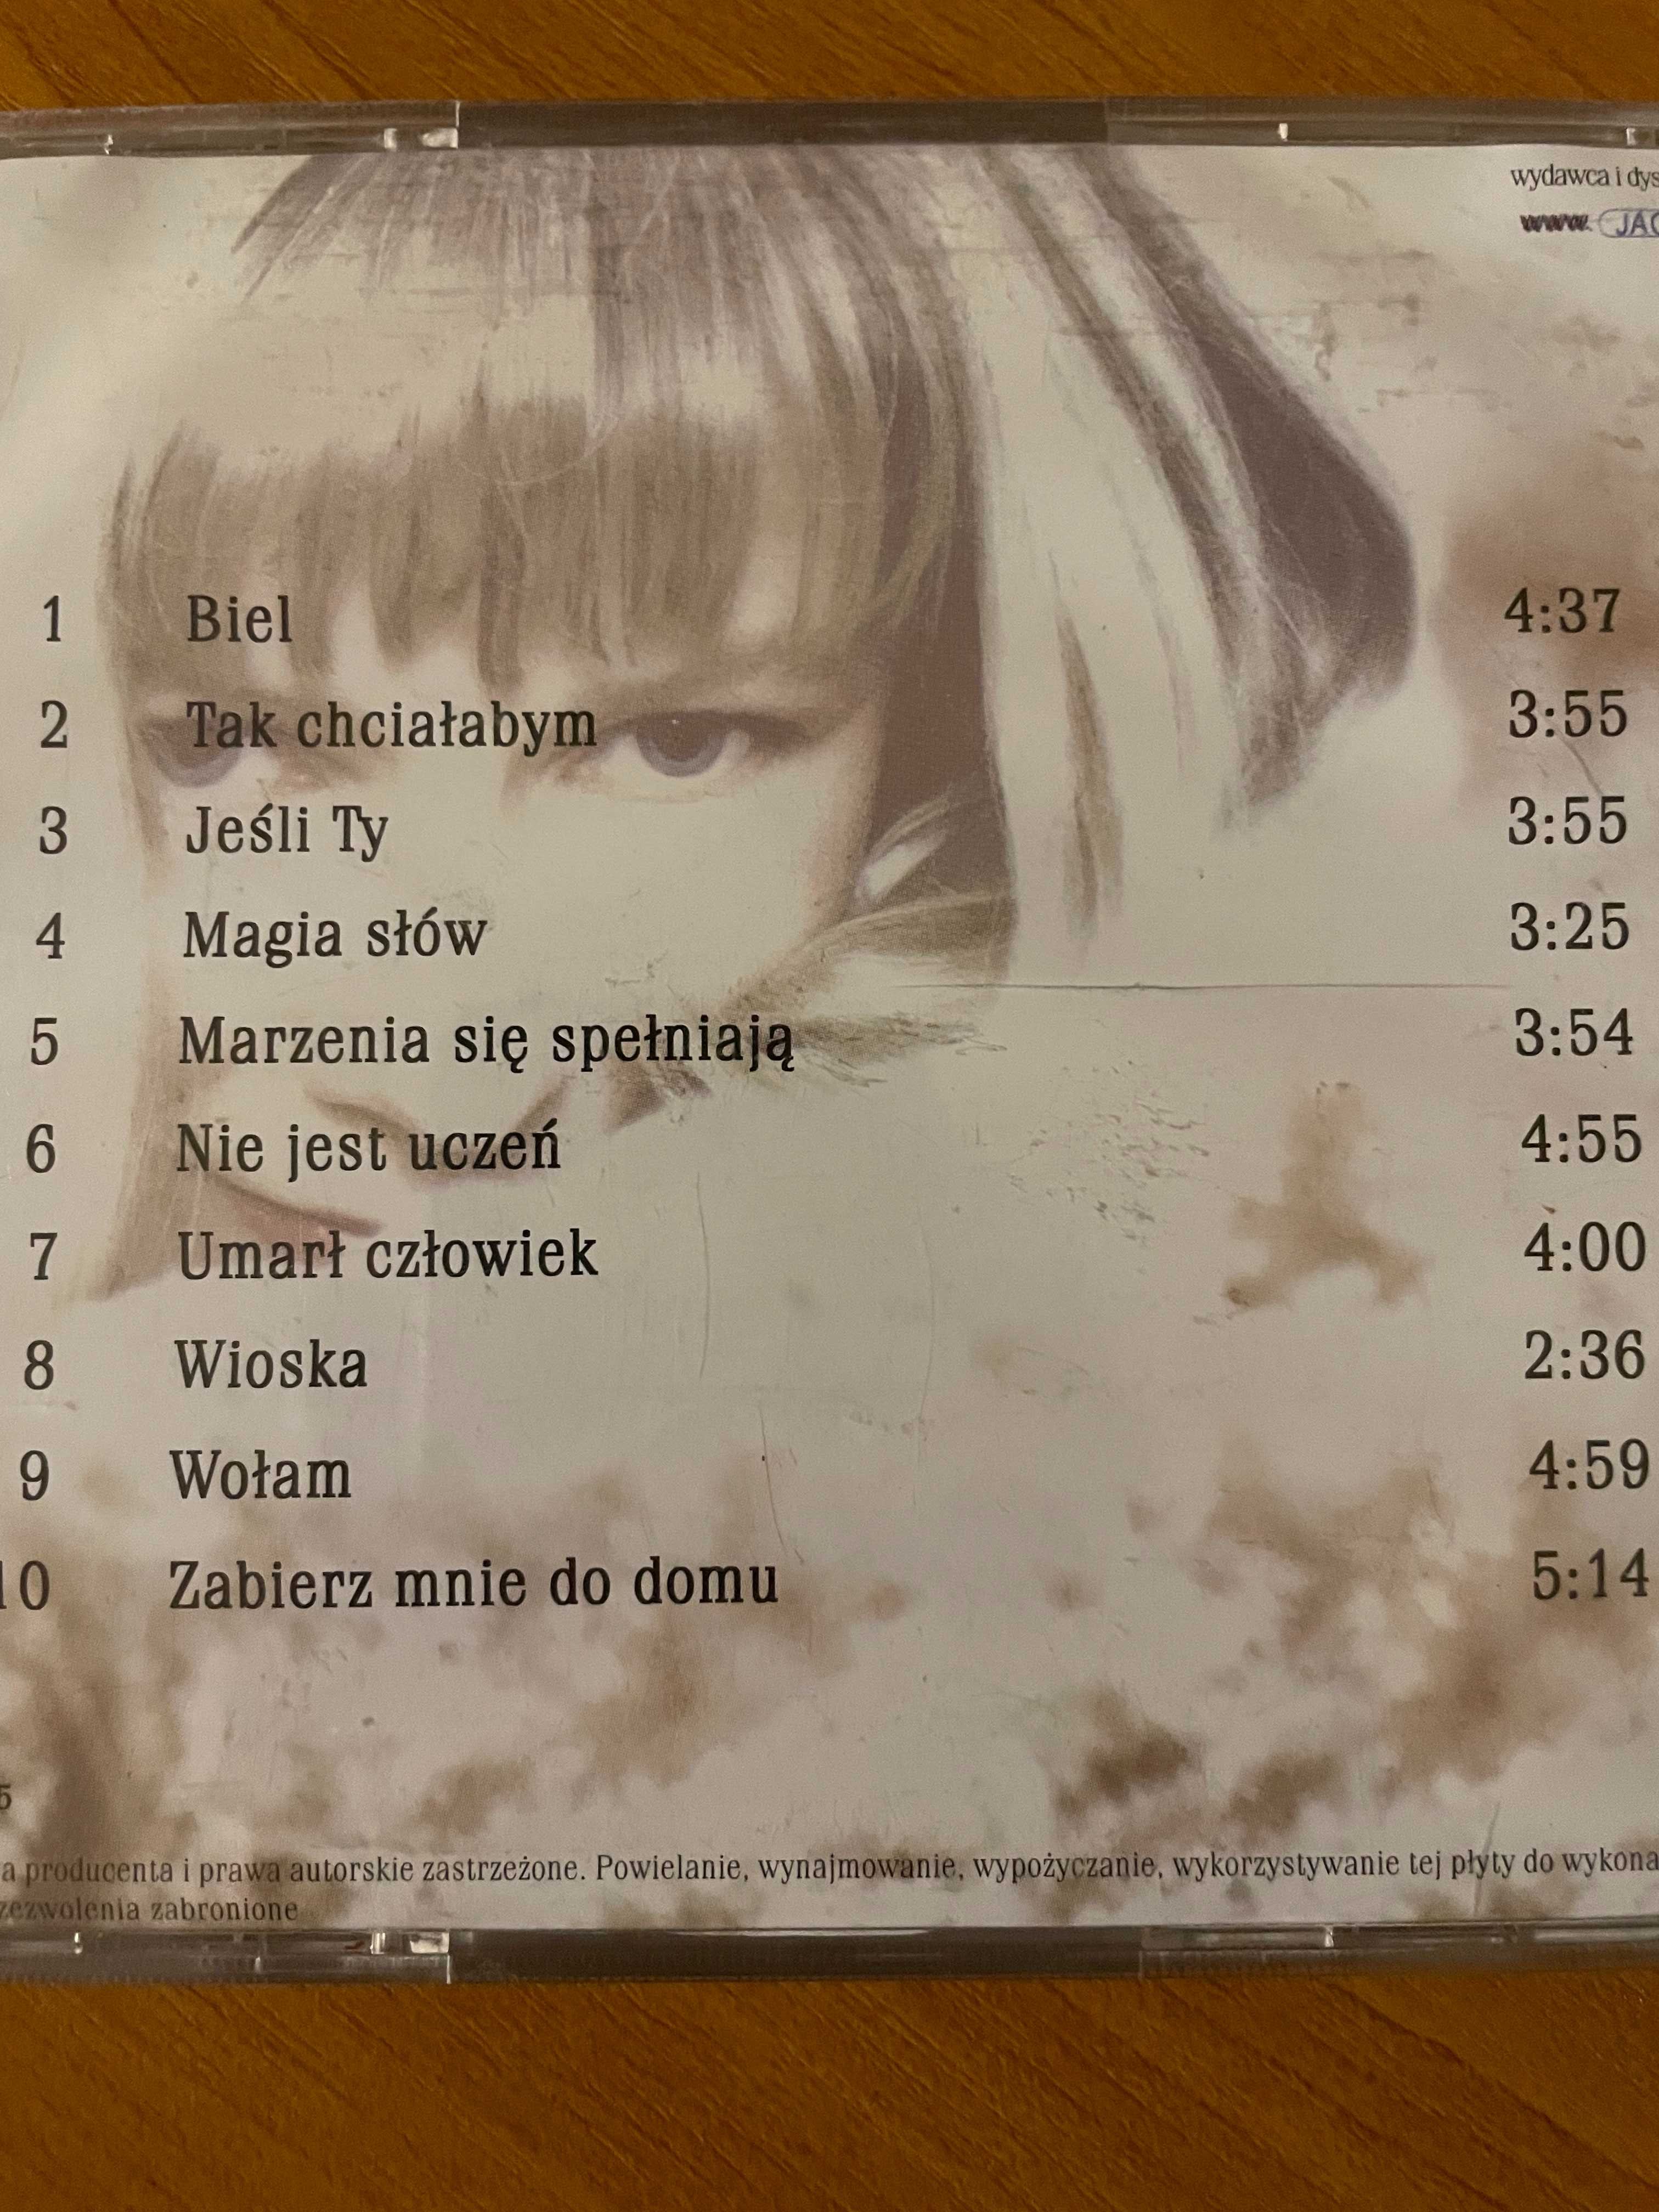 BIEL Joanna Rzyczniok - płyta CD